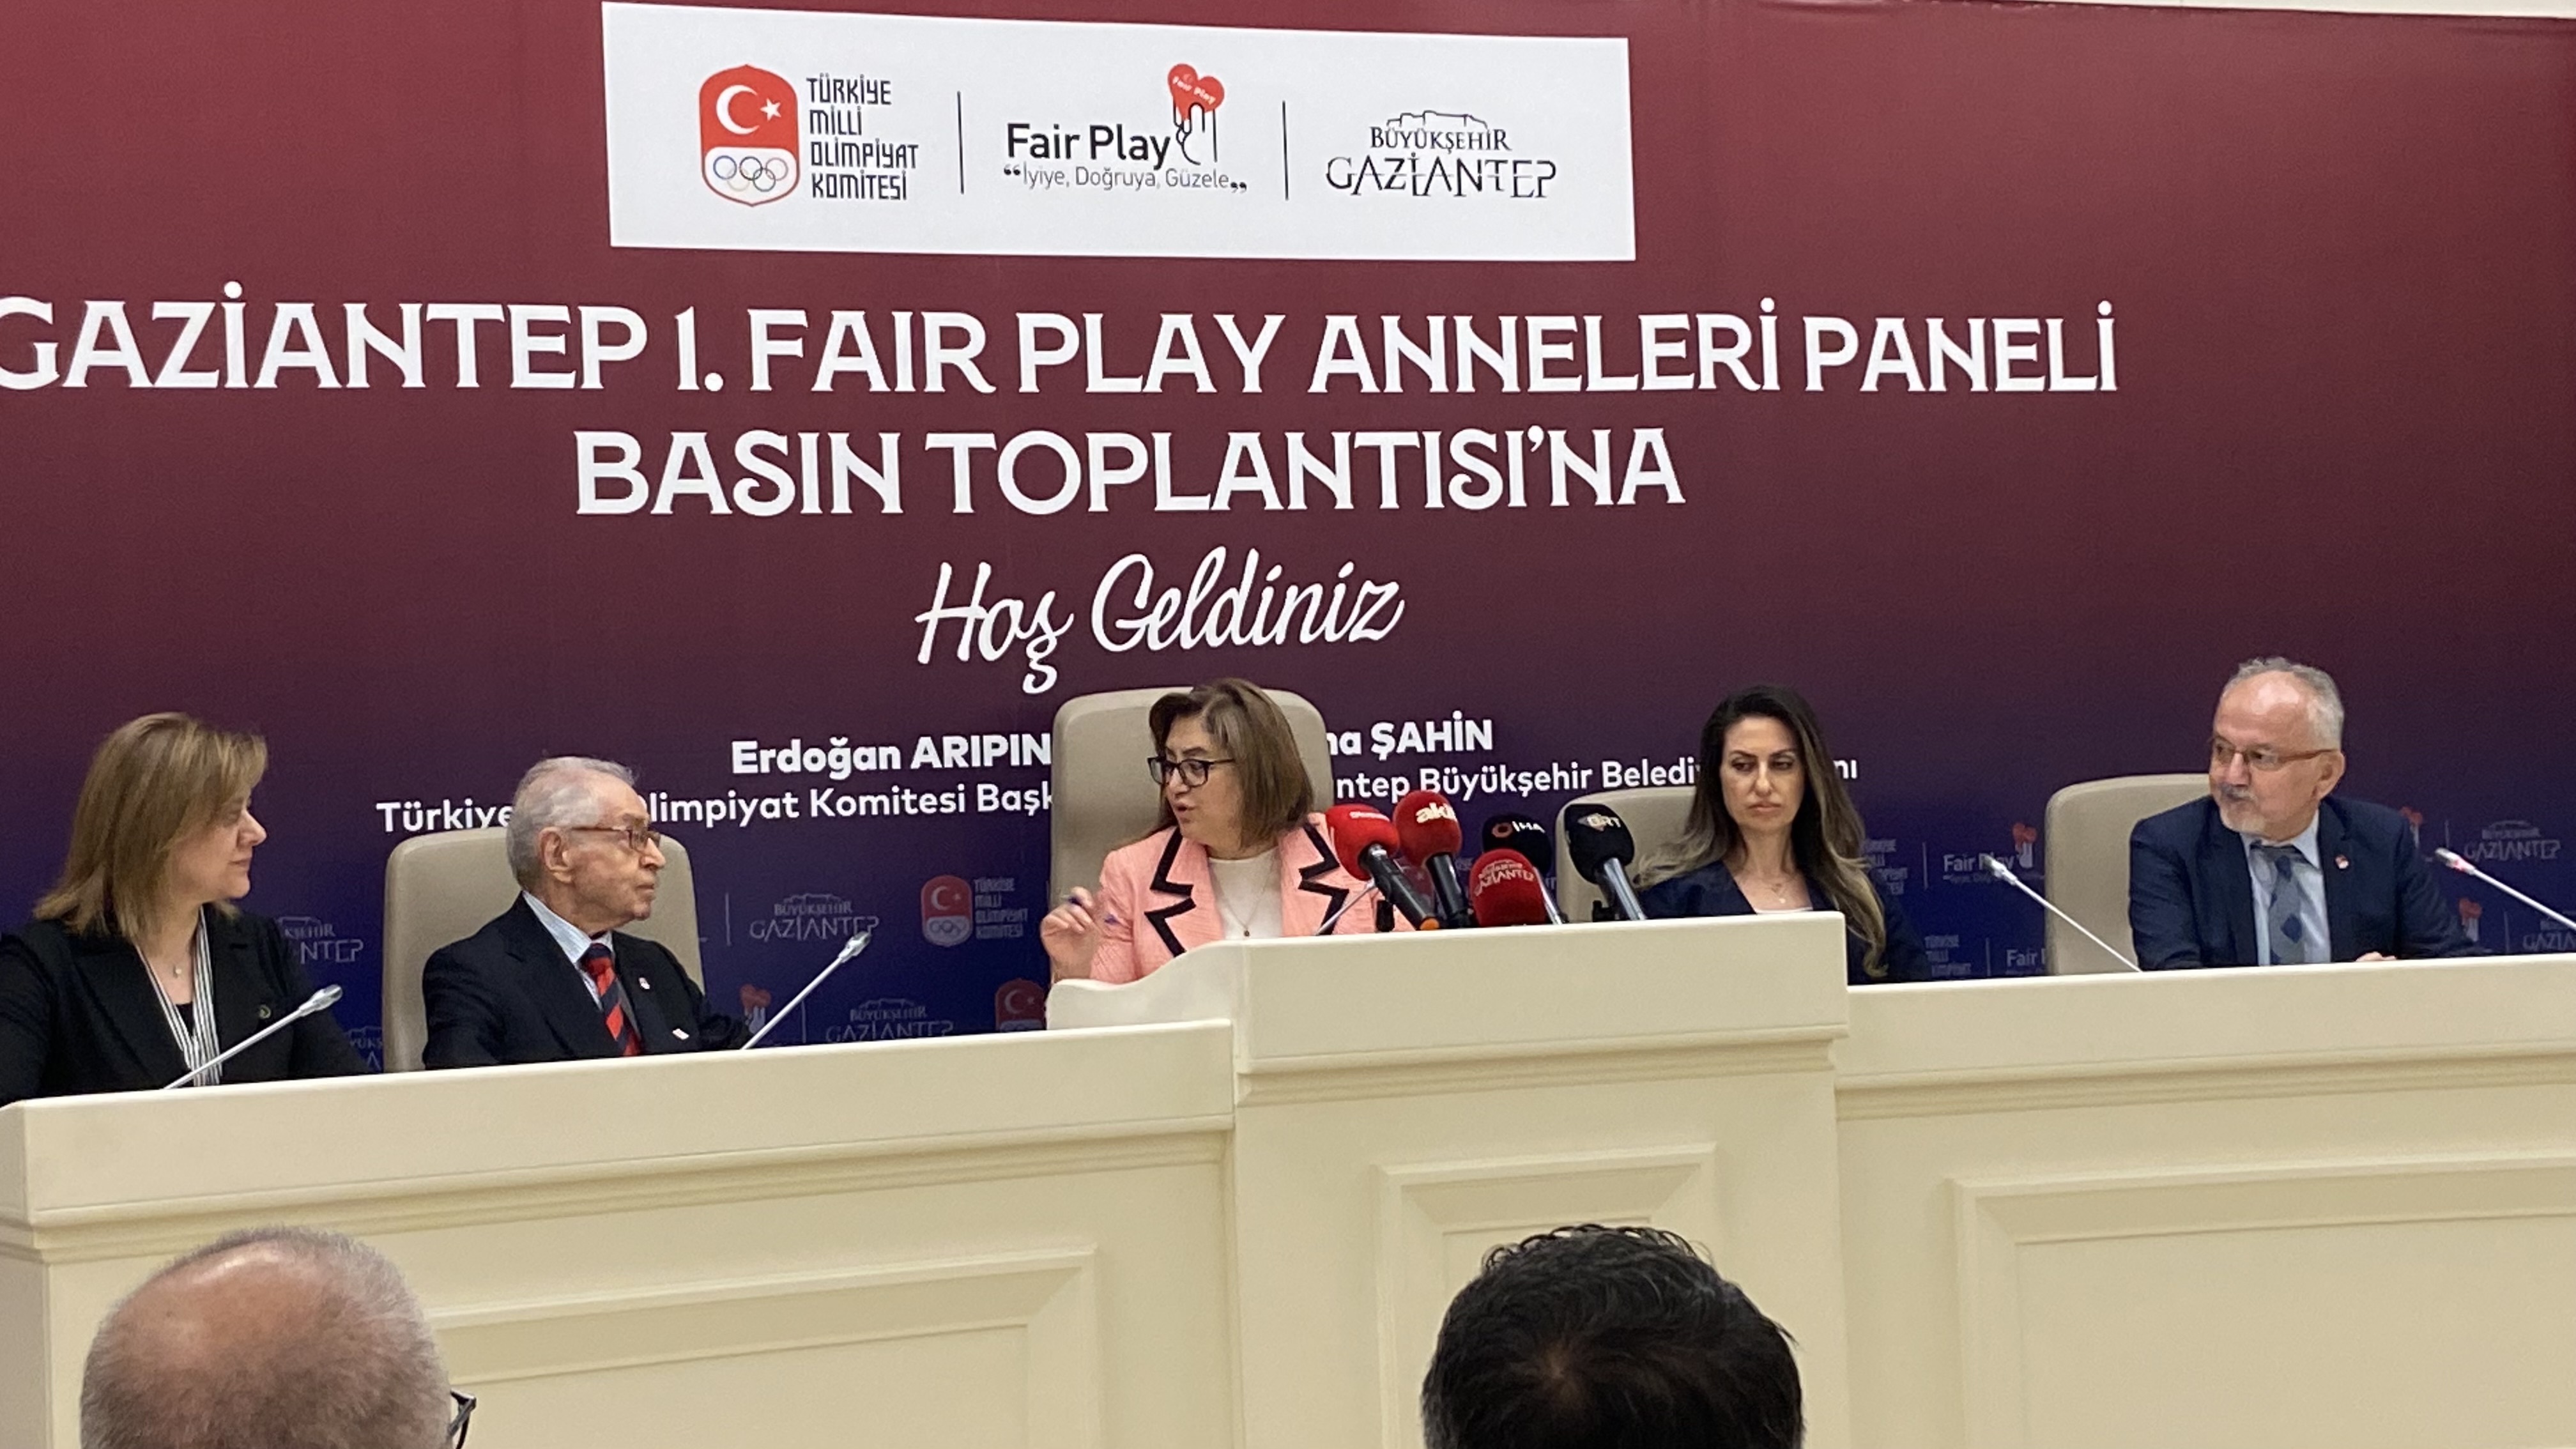 Fair Play Anneleri panelleri Gaziantep’te başlıyor